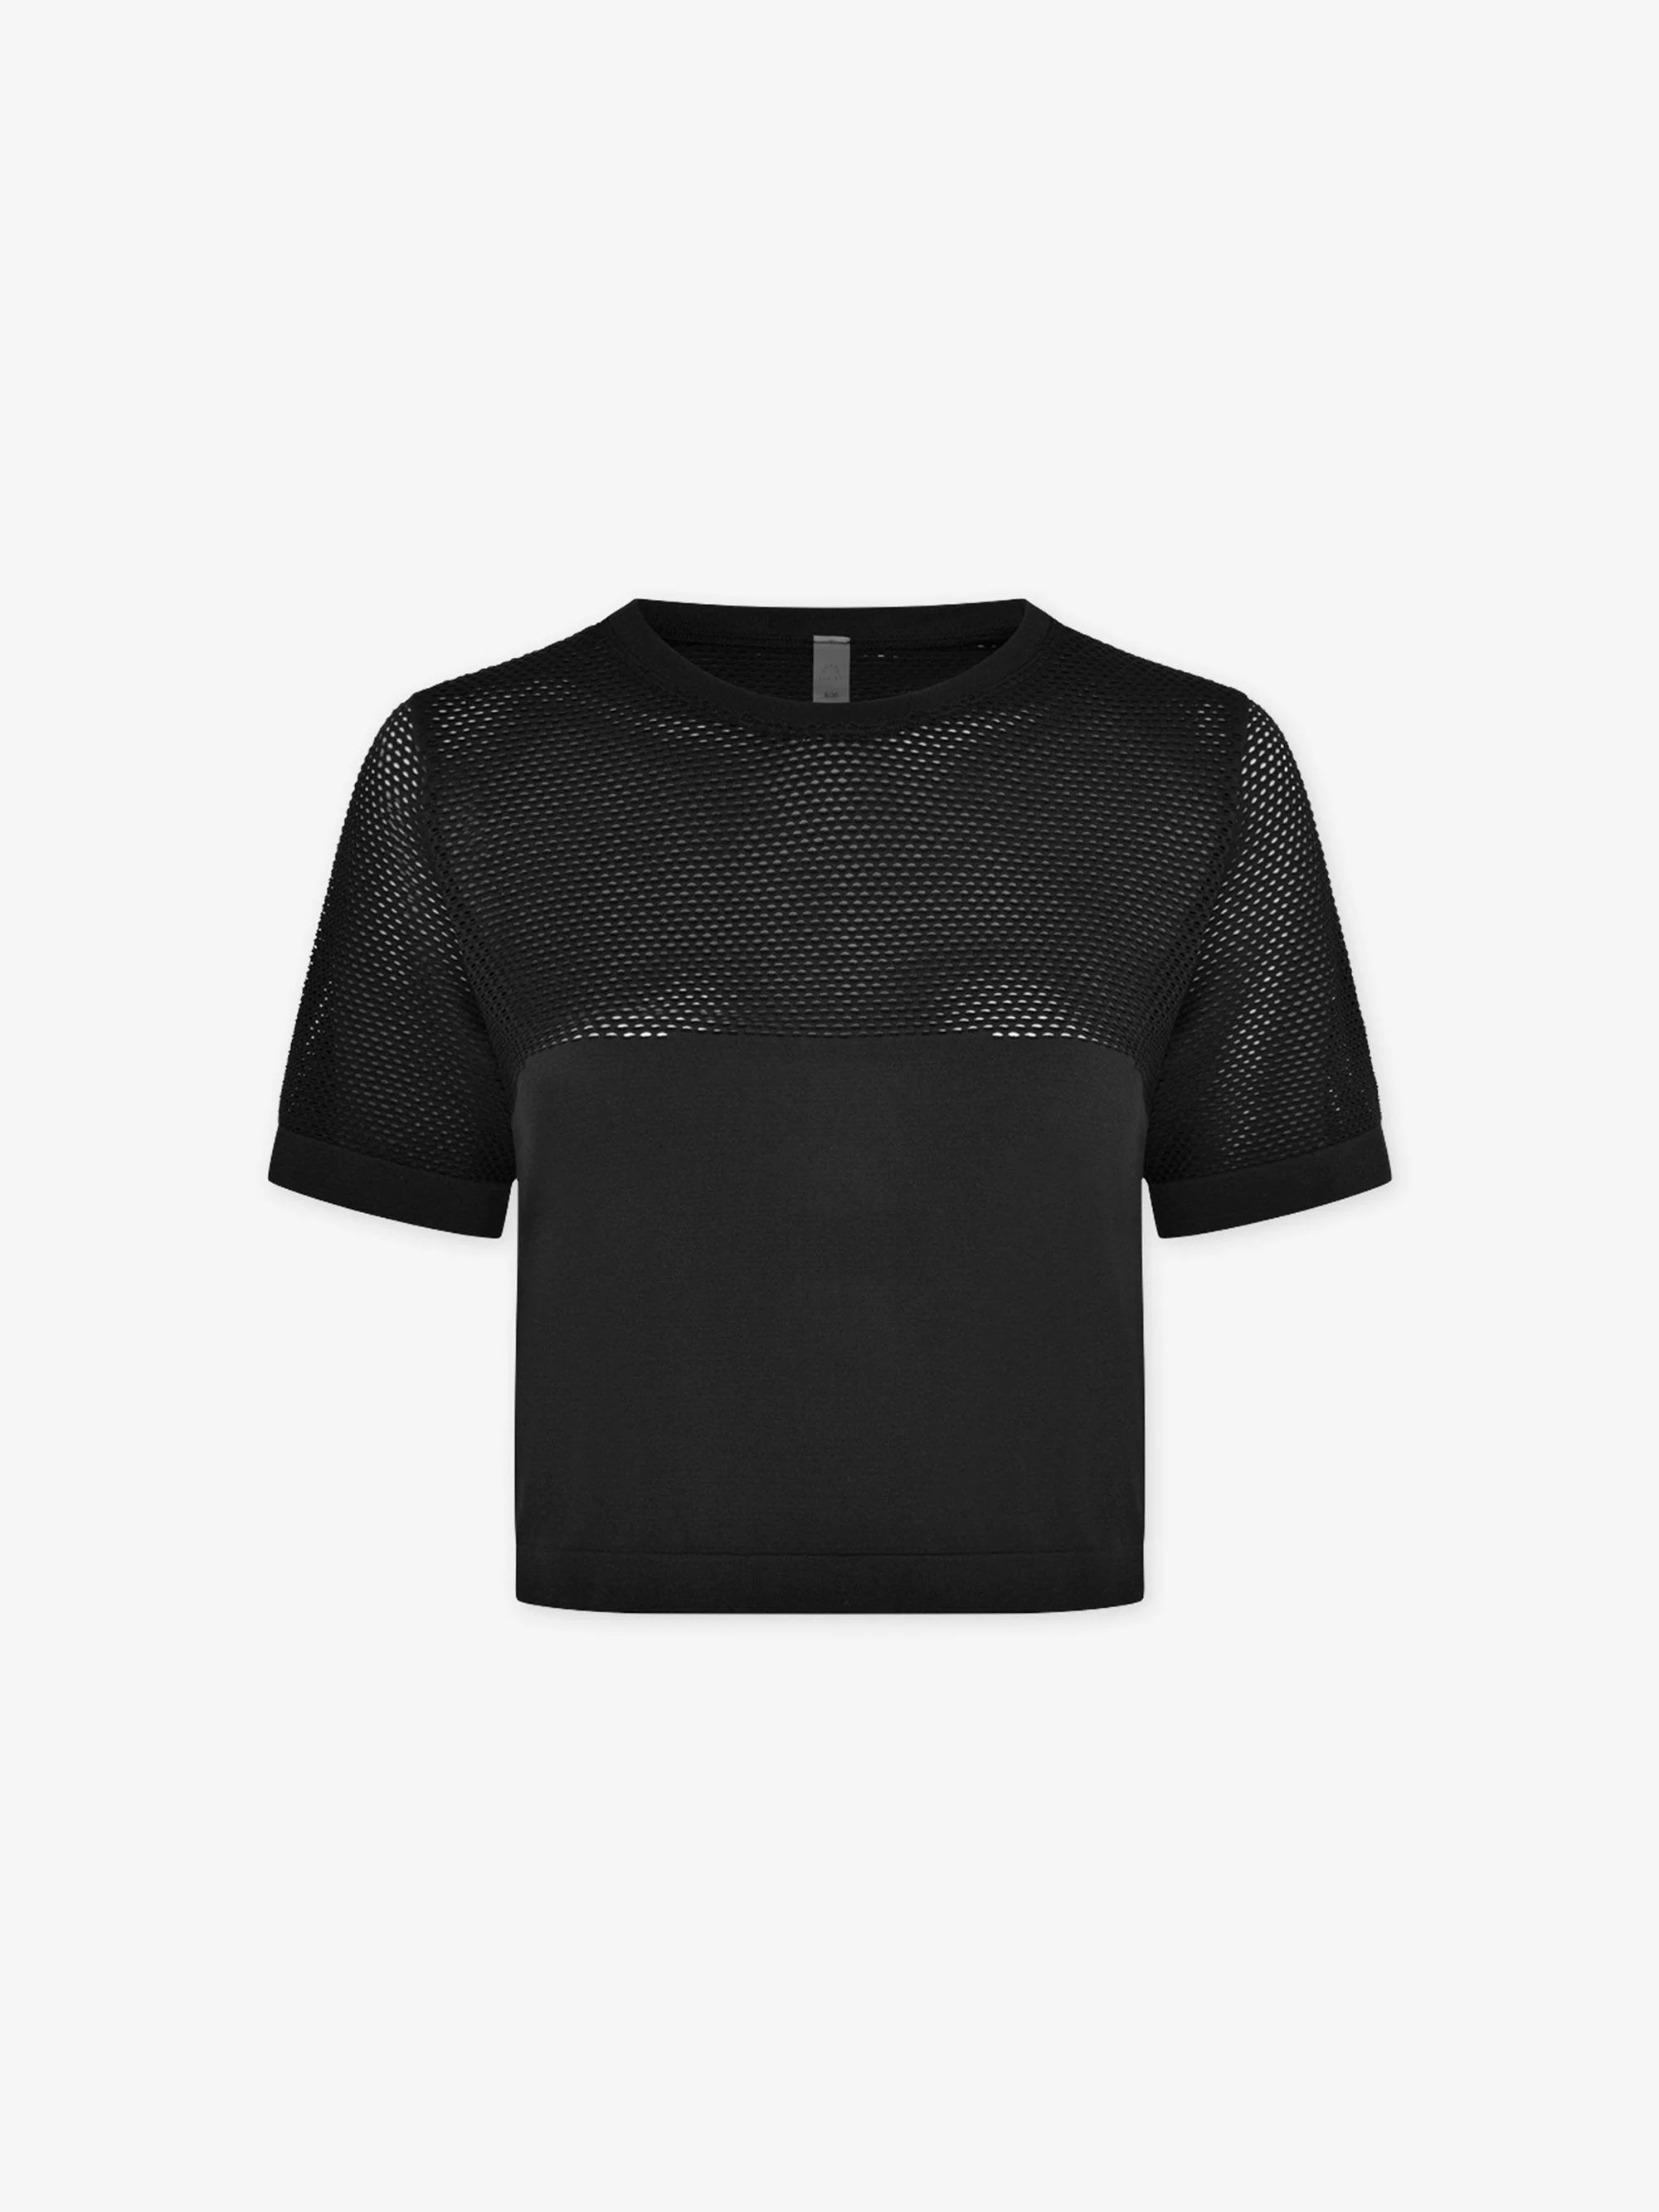 Paden T-Shirt | Varley USA